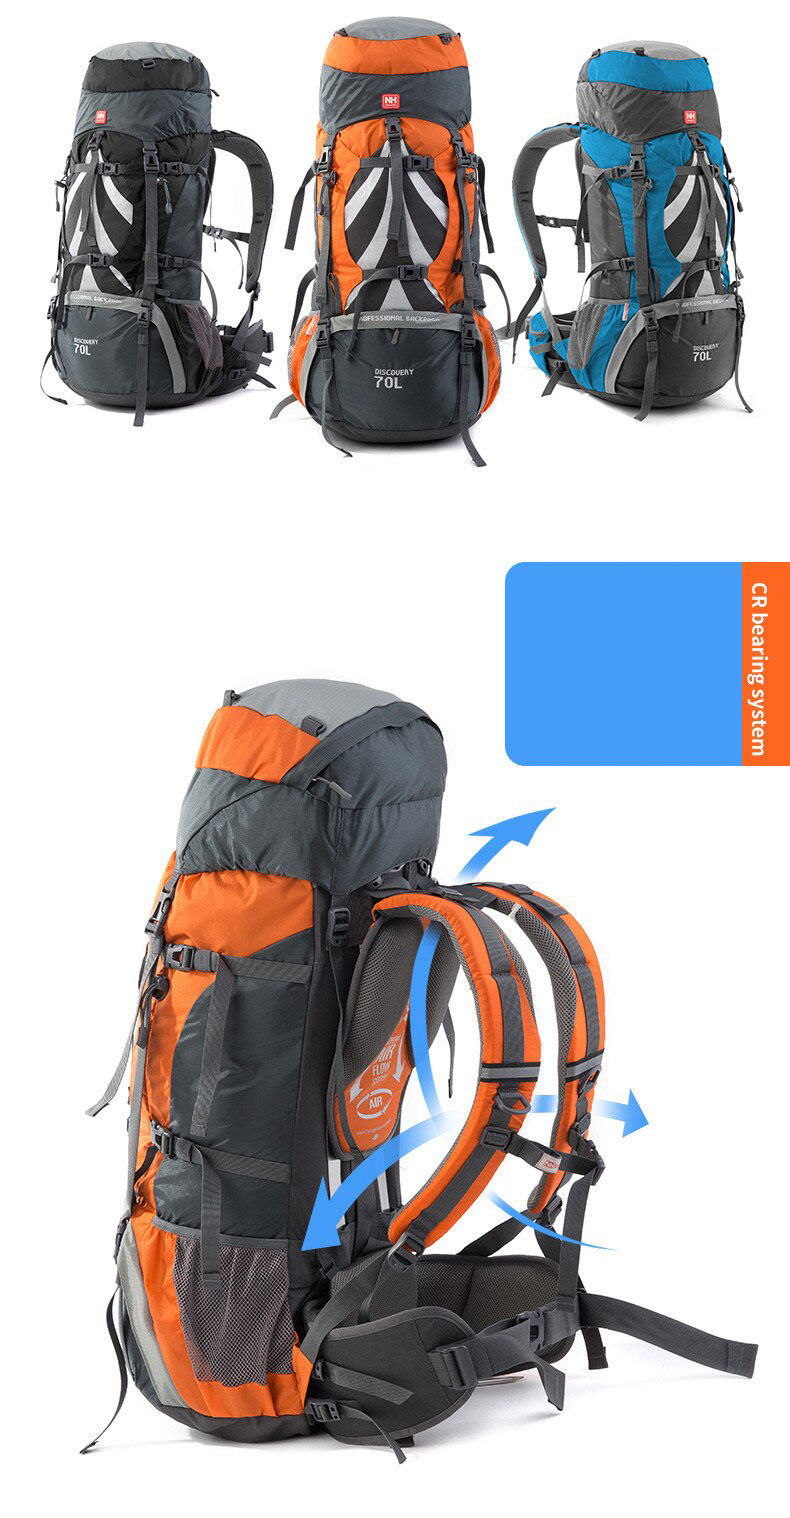 naturehike backpack 70l NH70B070 B 08